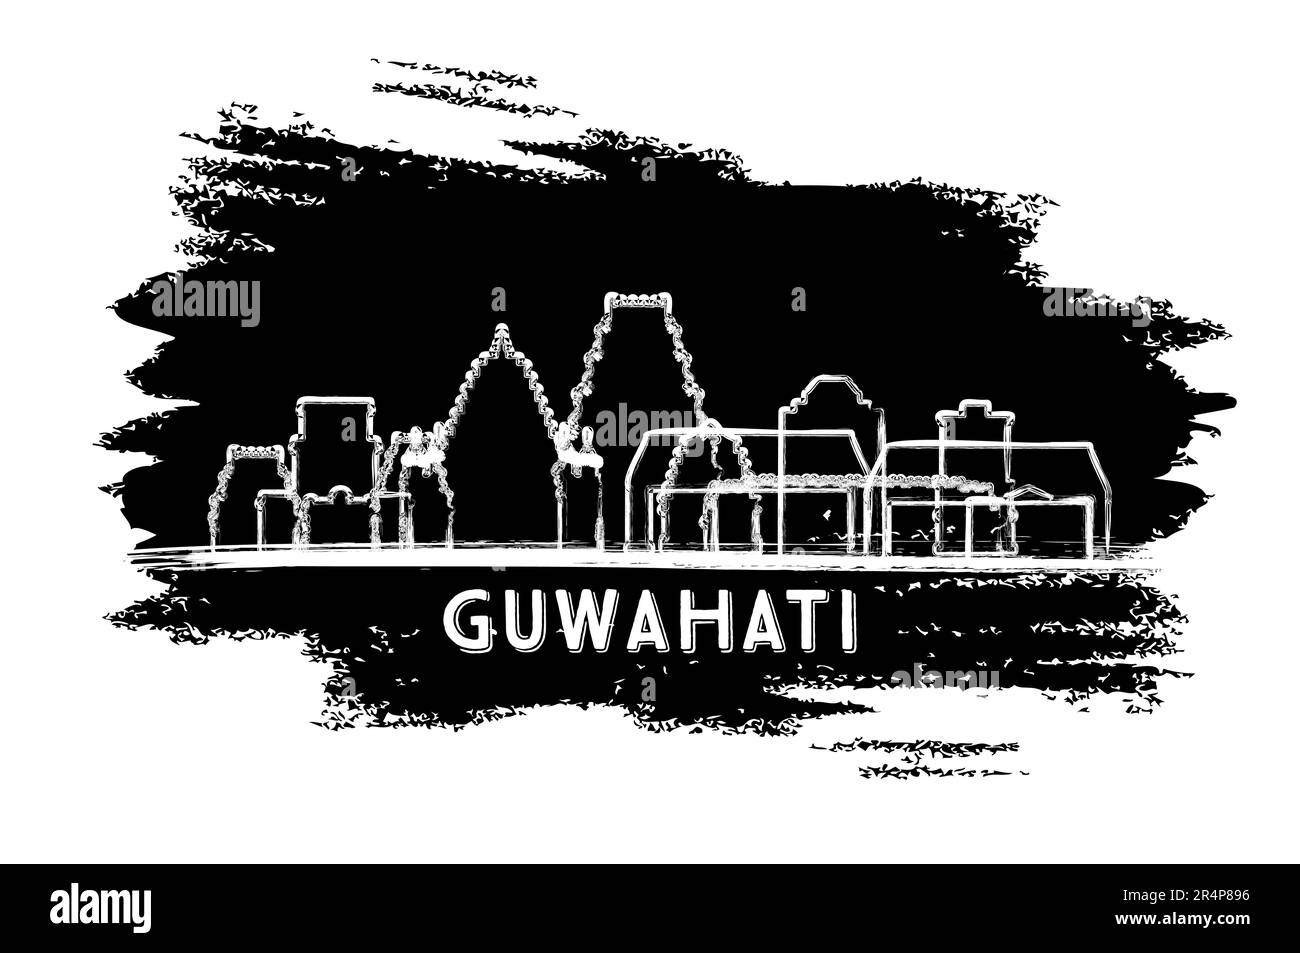 Guwahati India City Skyline Silhouette. Schizzo disegnato a mano. Concetto di viaggio d'affari e turismo con architettura moderna. Illustrazione vettoriale. Illustrazione Vettoriale